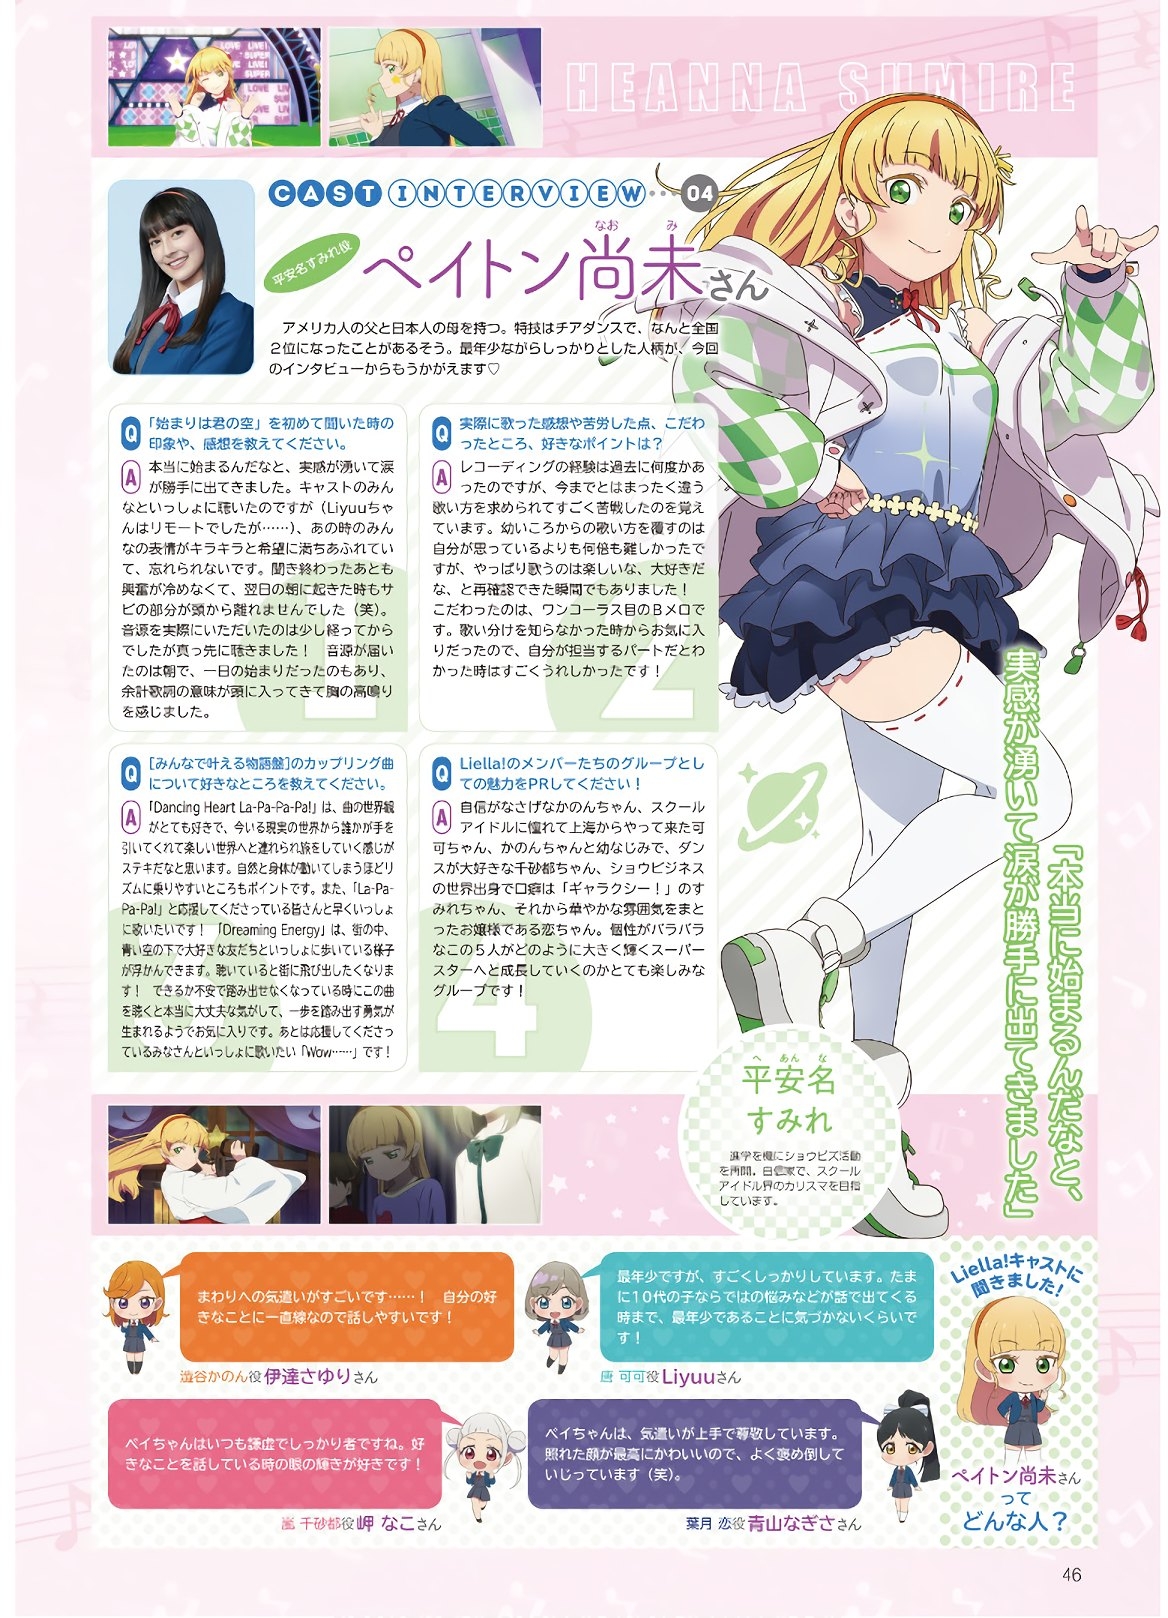 Dengeki G's Magazine #286 - May 2021 43